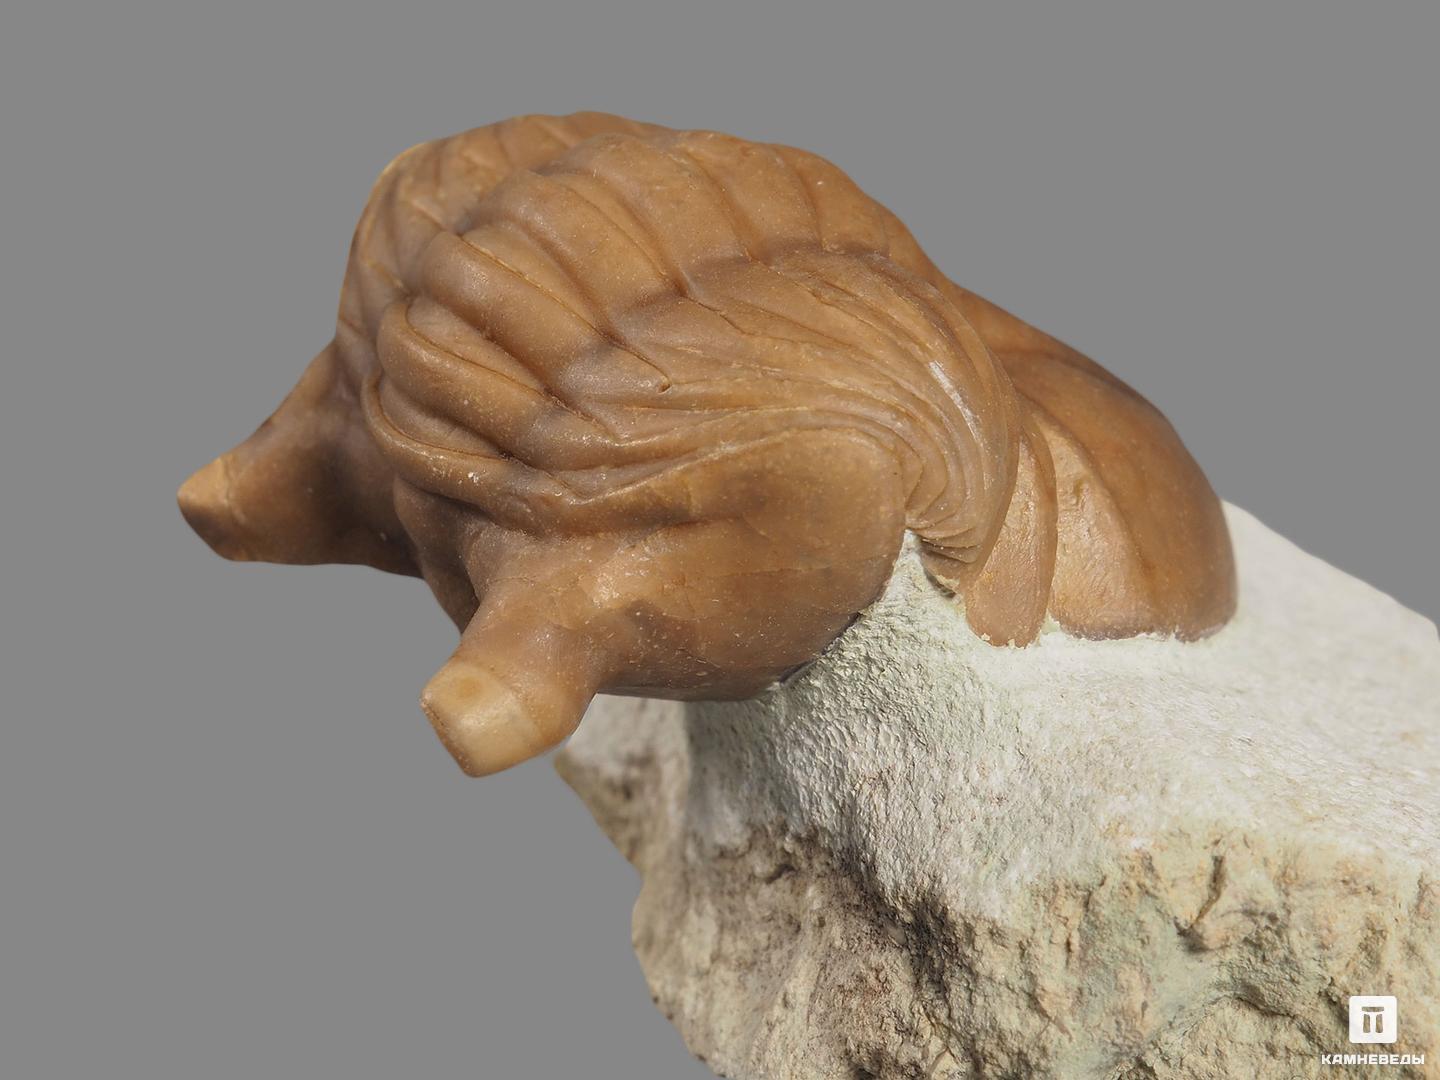 Трилобит Asaphus cornutus (PANDER 1830) на породе, 6,5х5,7х3,1 см, 18486, фото 3